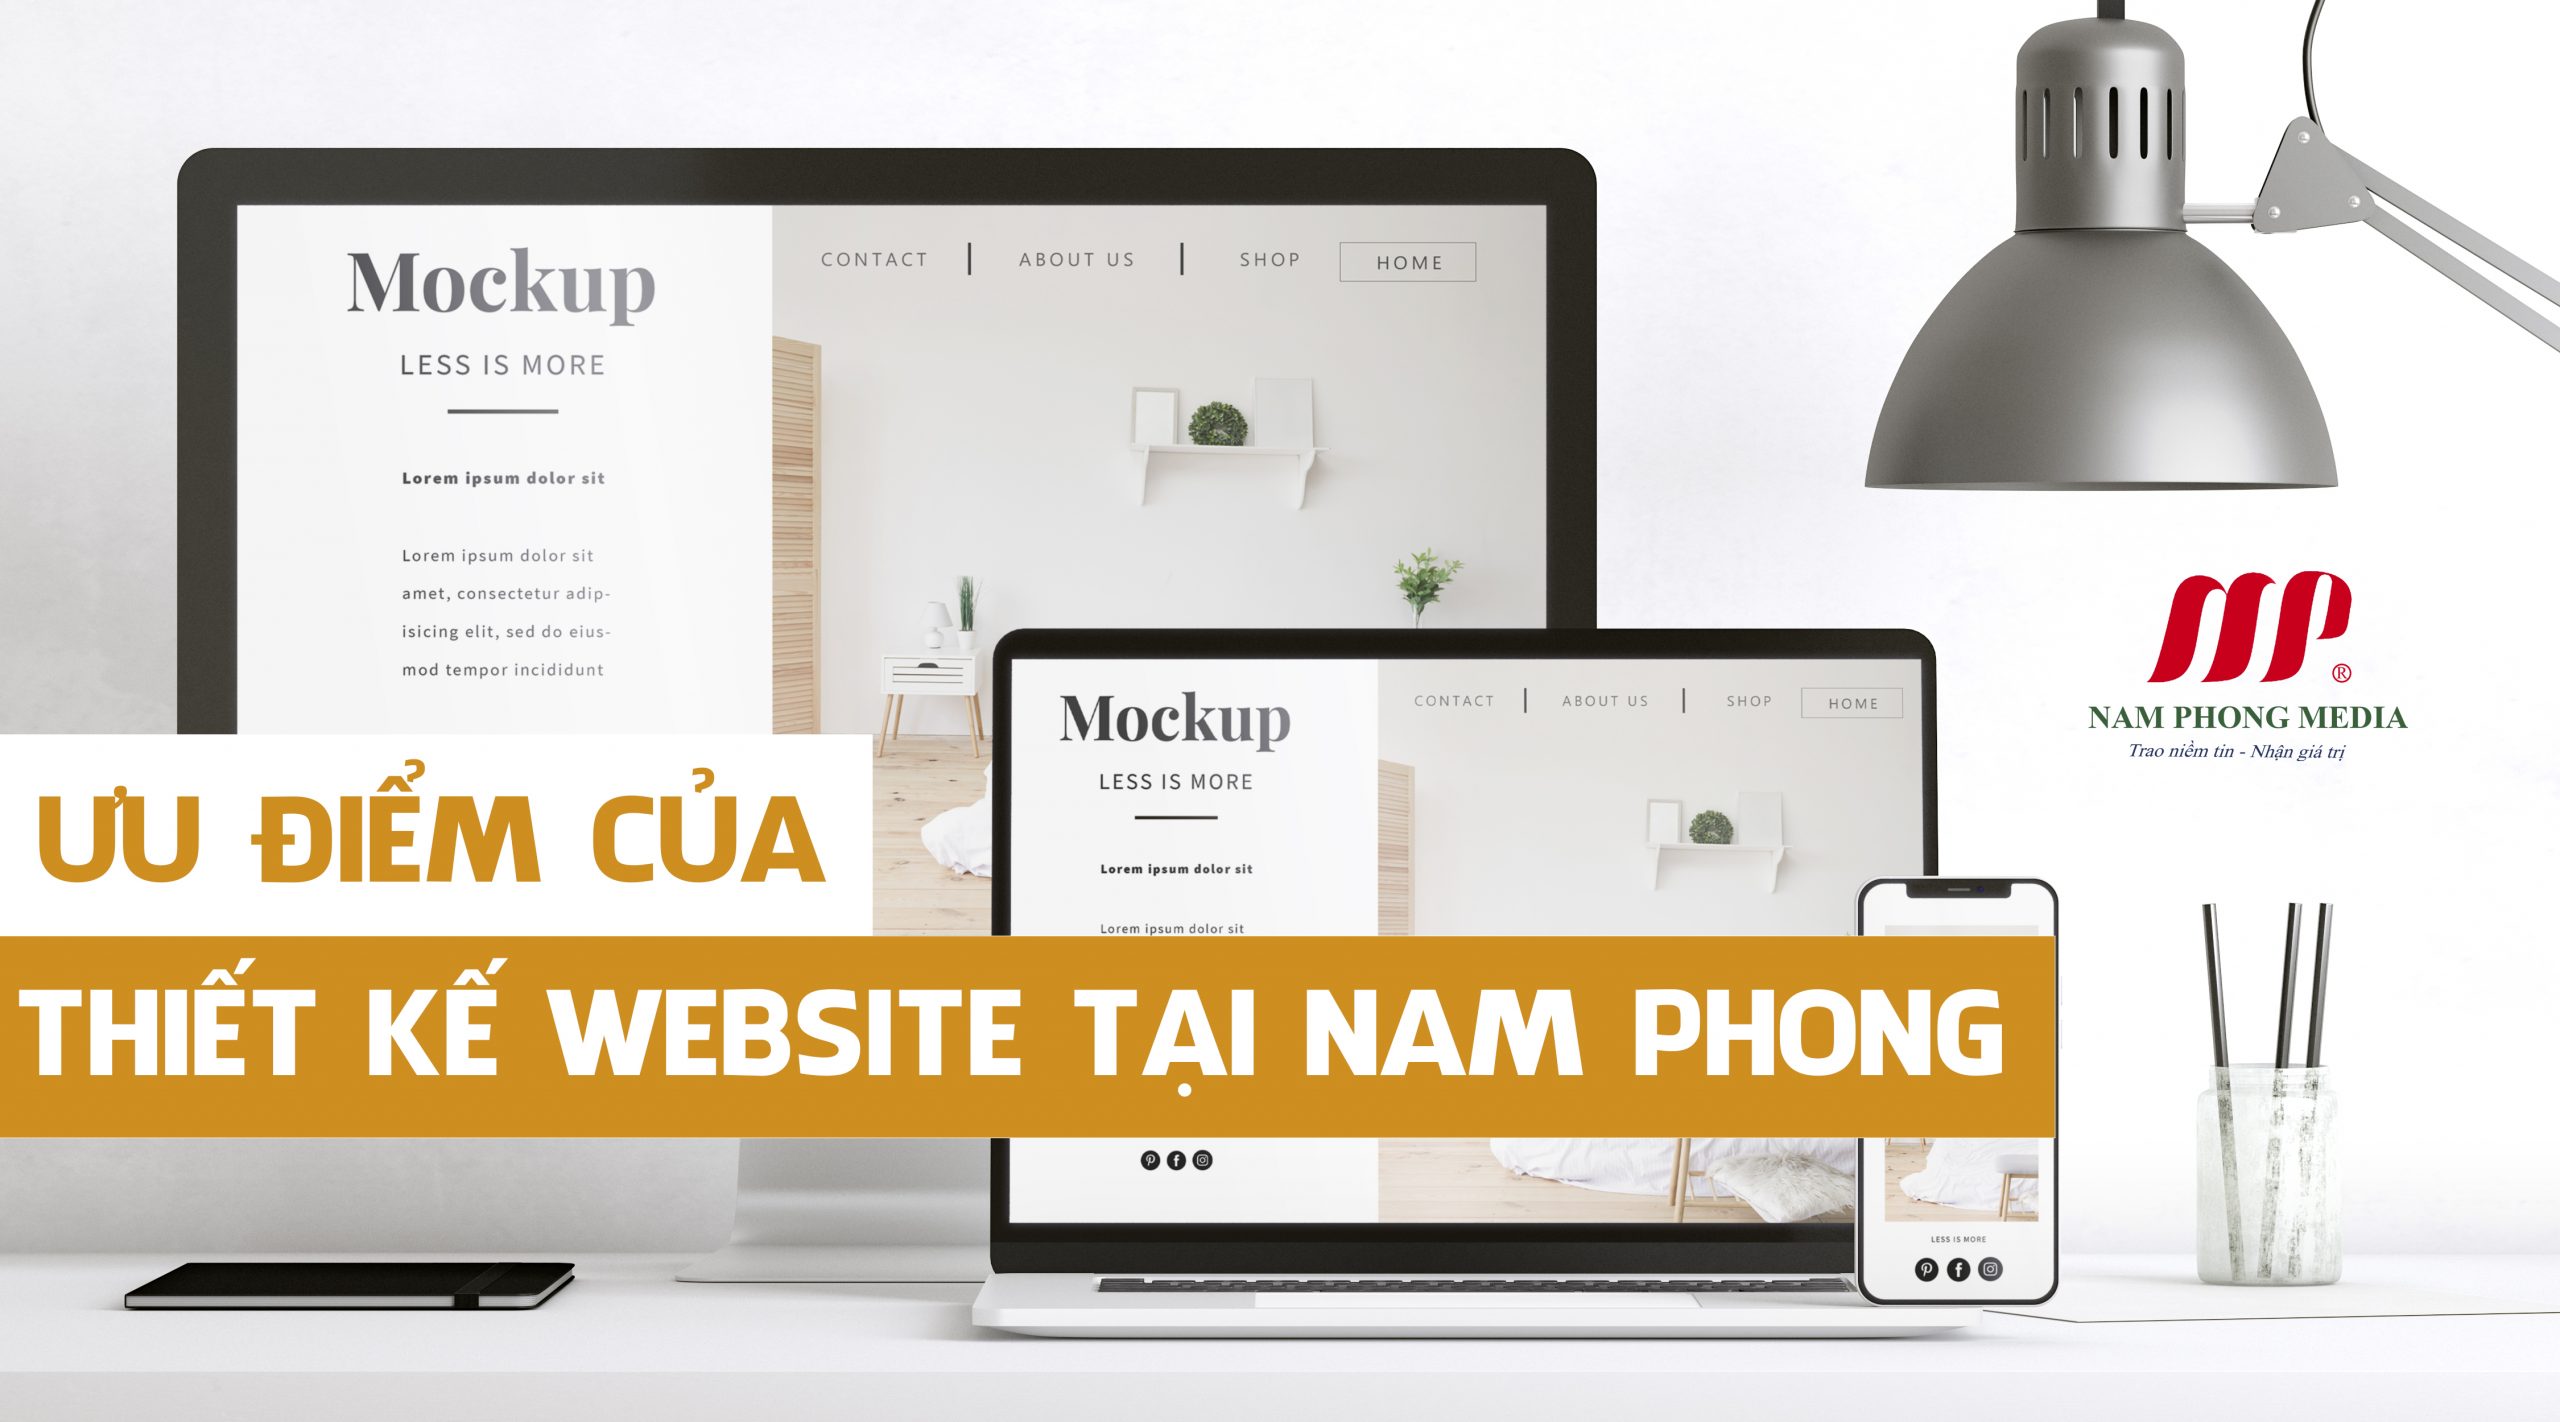 ưu điểm của thiết kế website theo yêu cầu tại Nam Phong